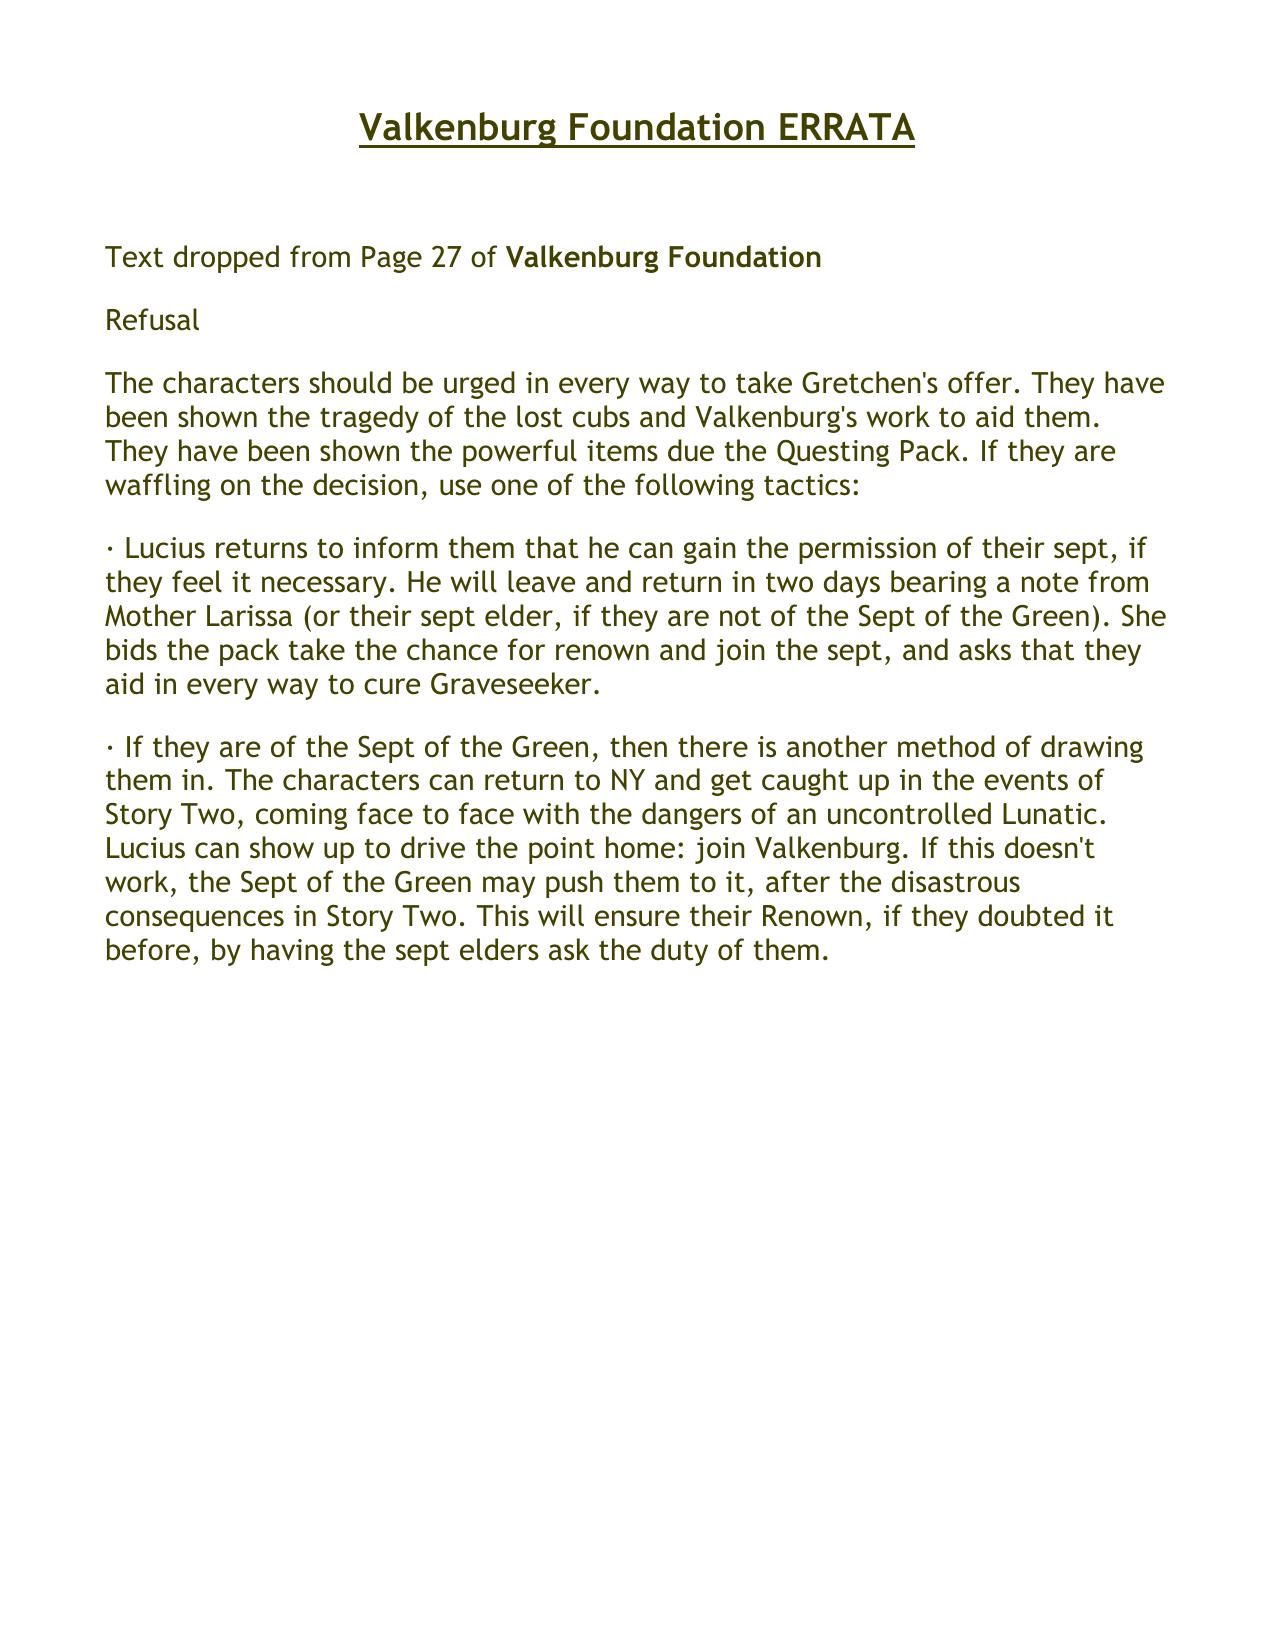 Valkenburg Foundation Errata